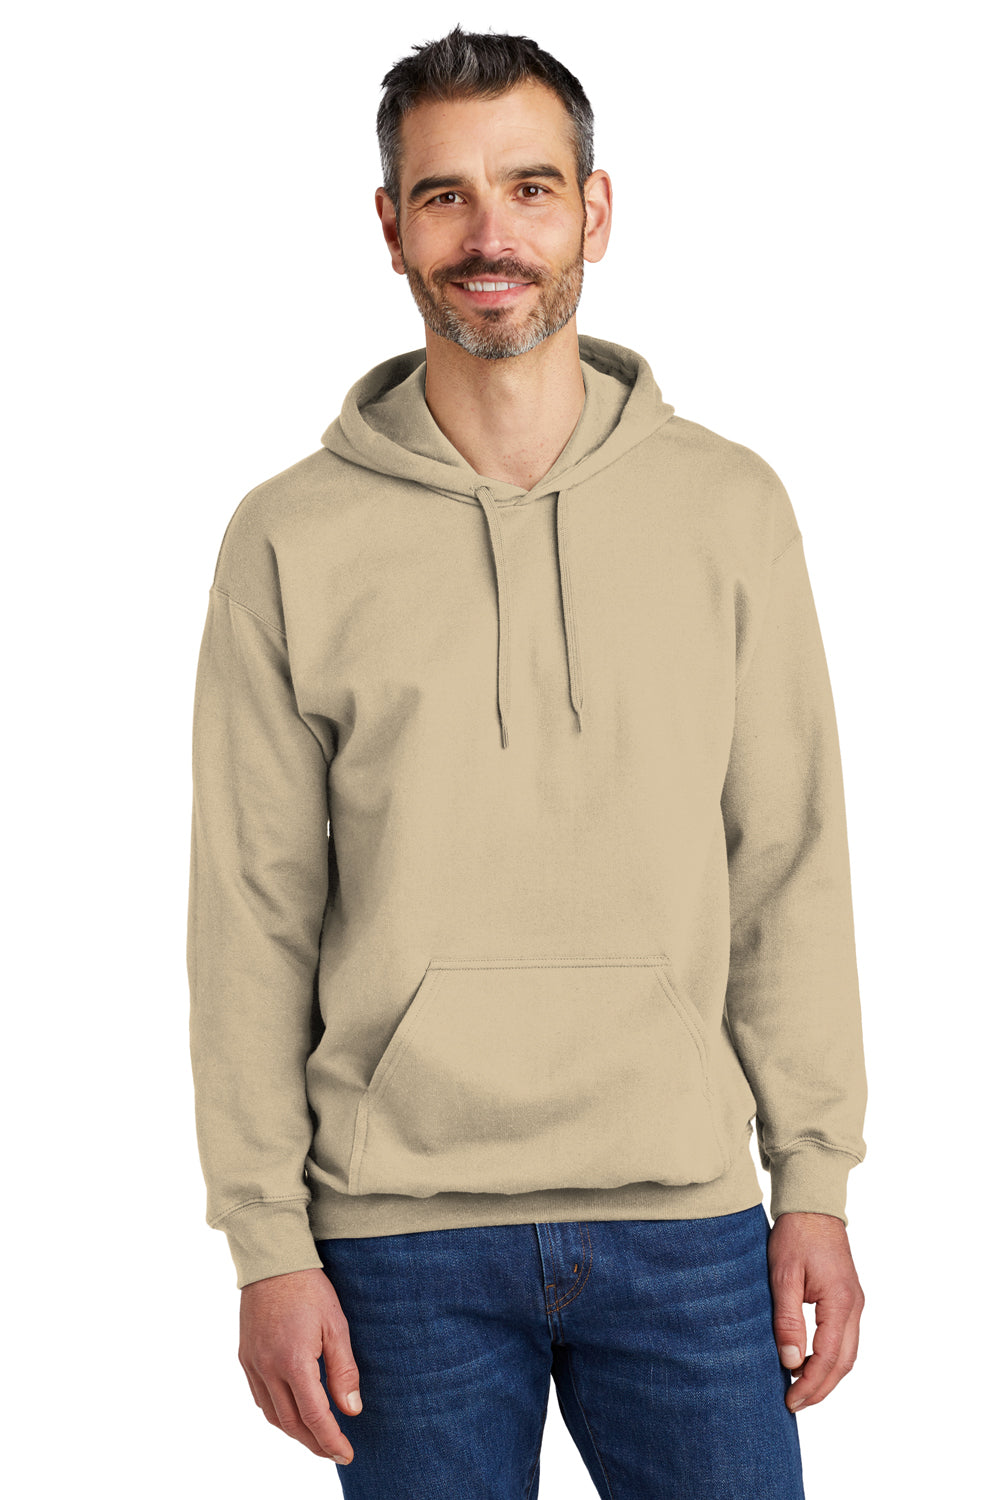 Gildan Mens Softstyle Hooded Sweatshirt Hoodie - Sand